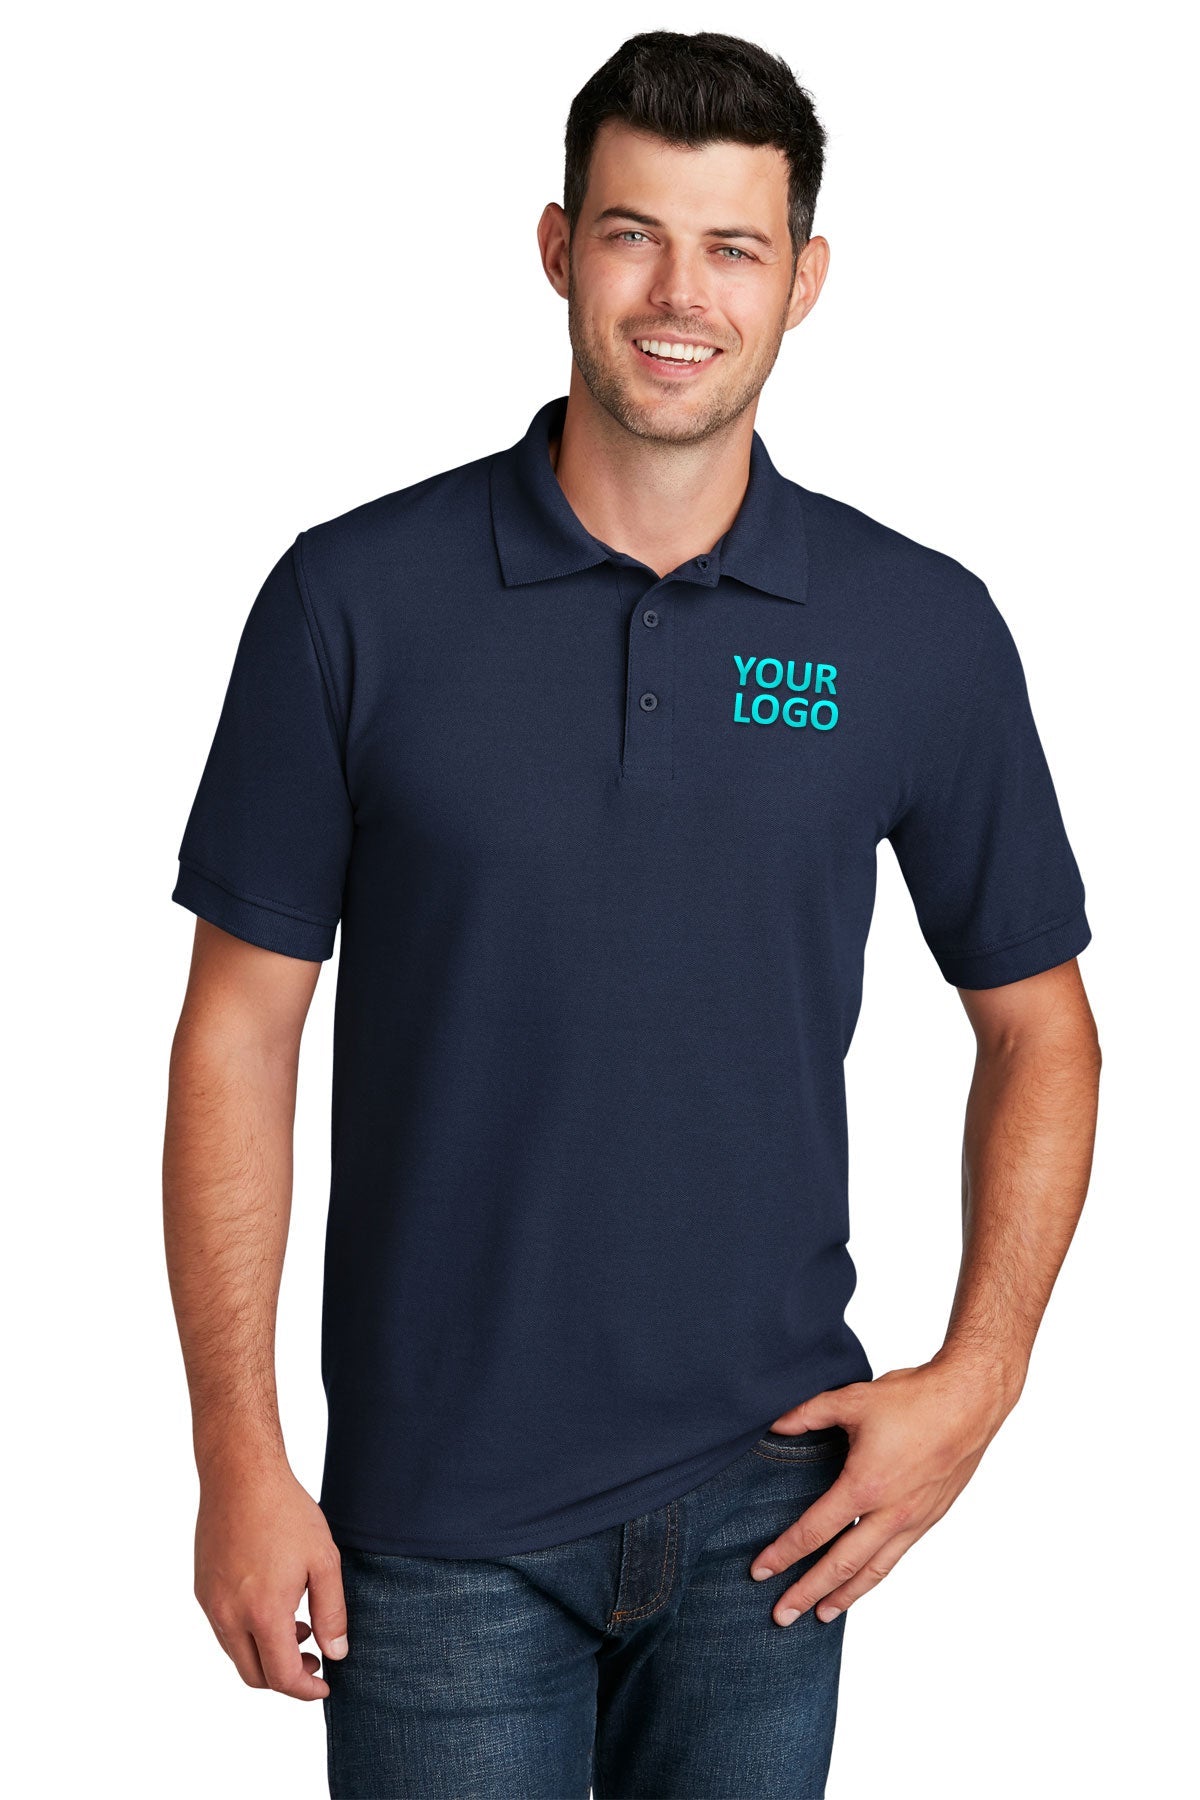 port & company deep navy kp155 custom logo polo shirts